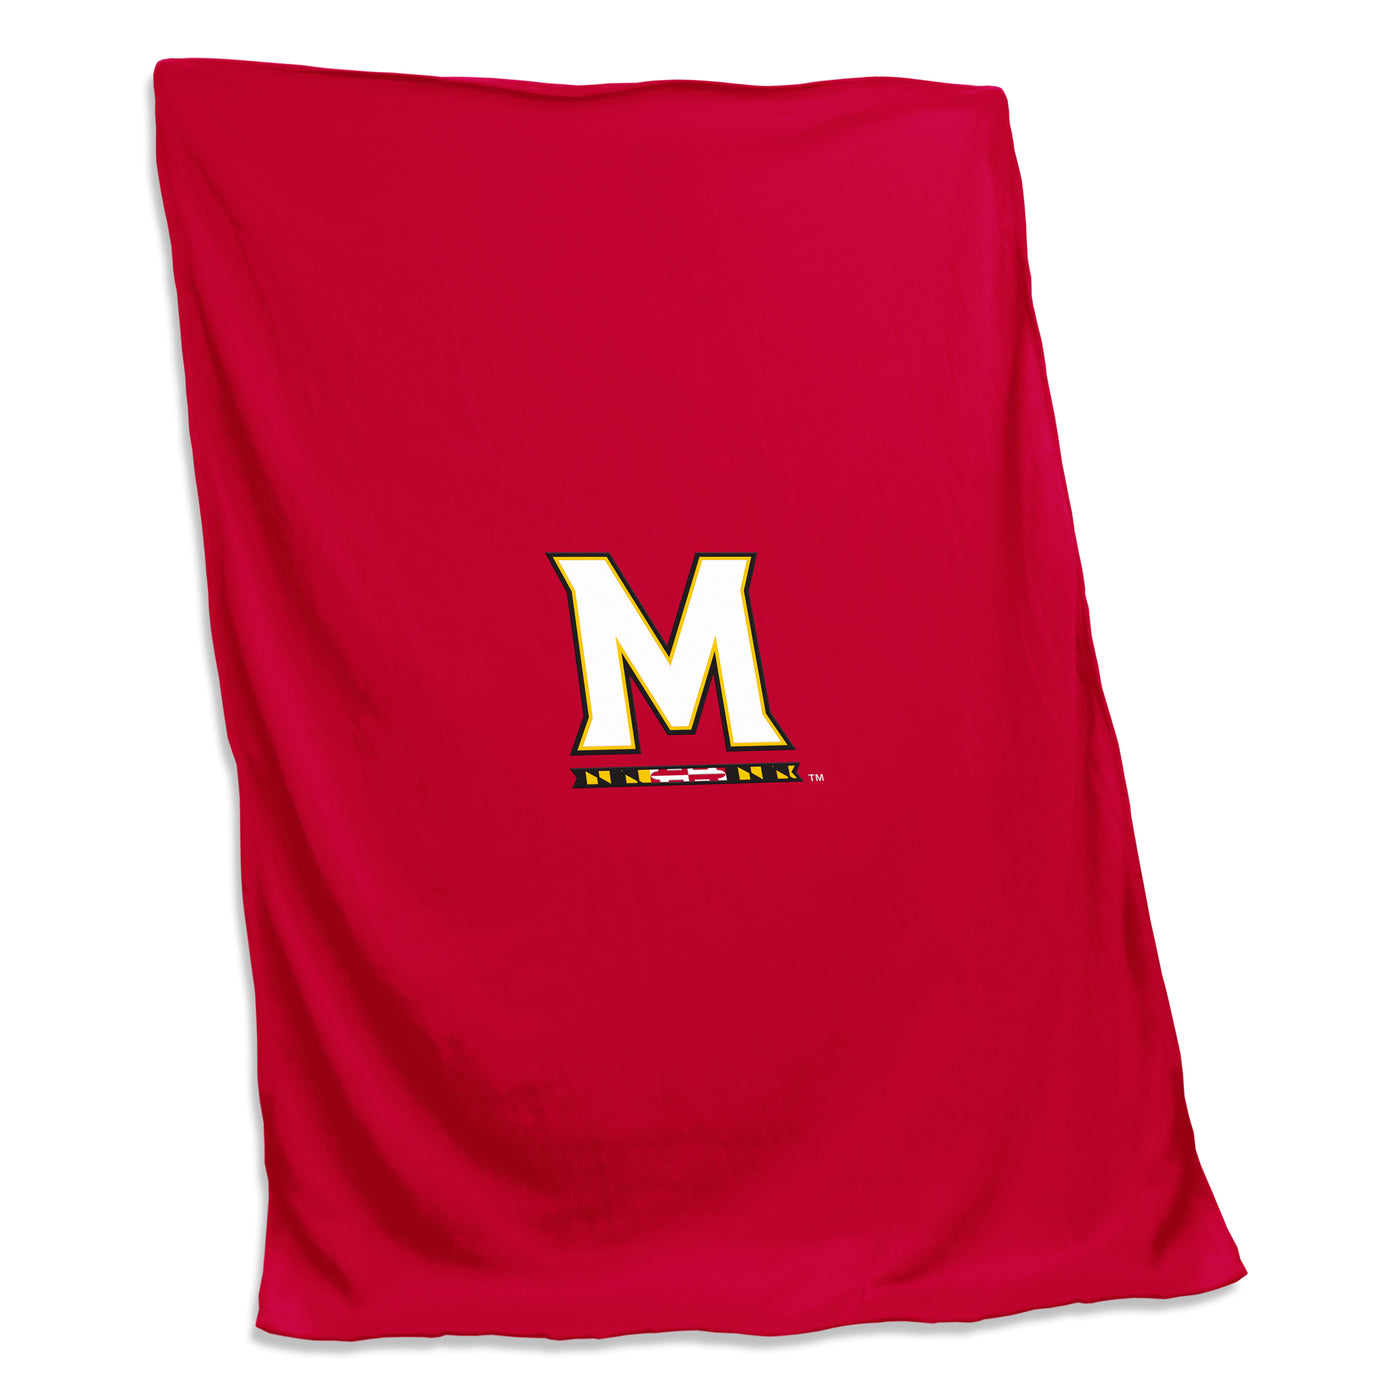 Maryland Sweatshirt Blanket